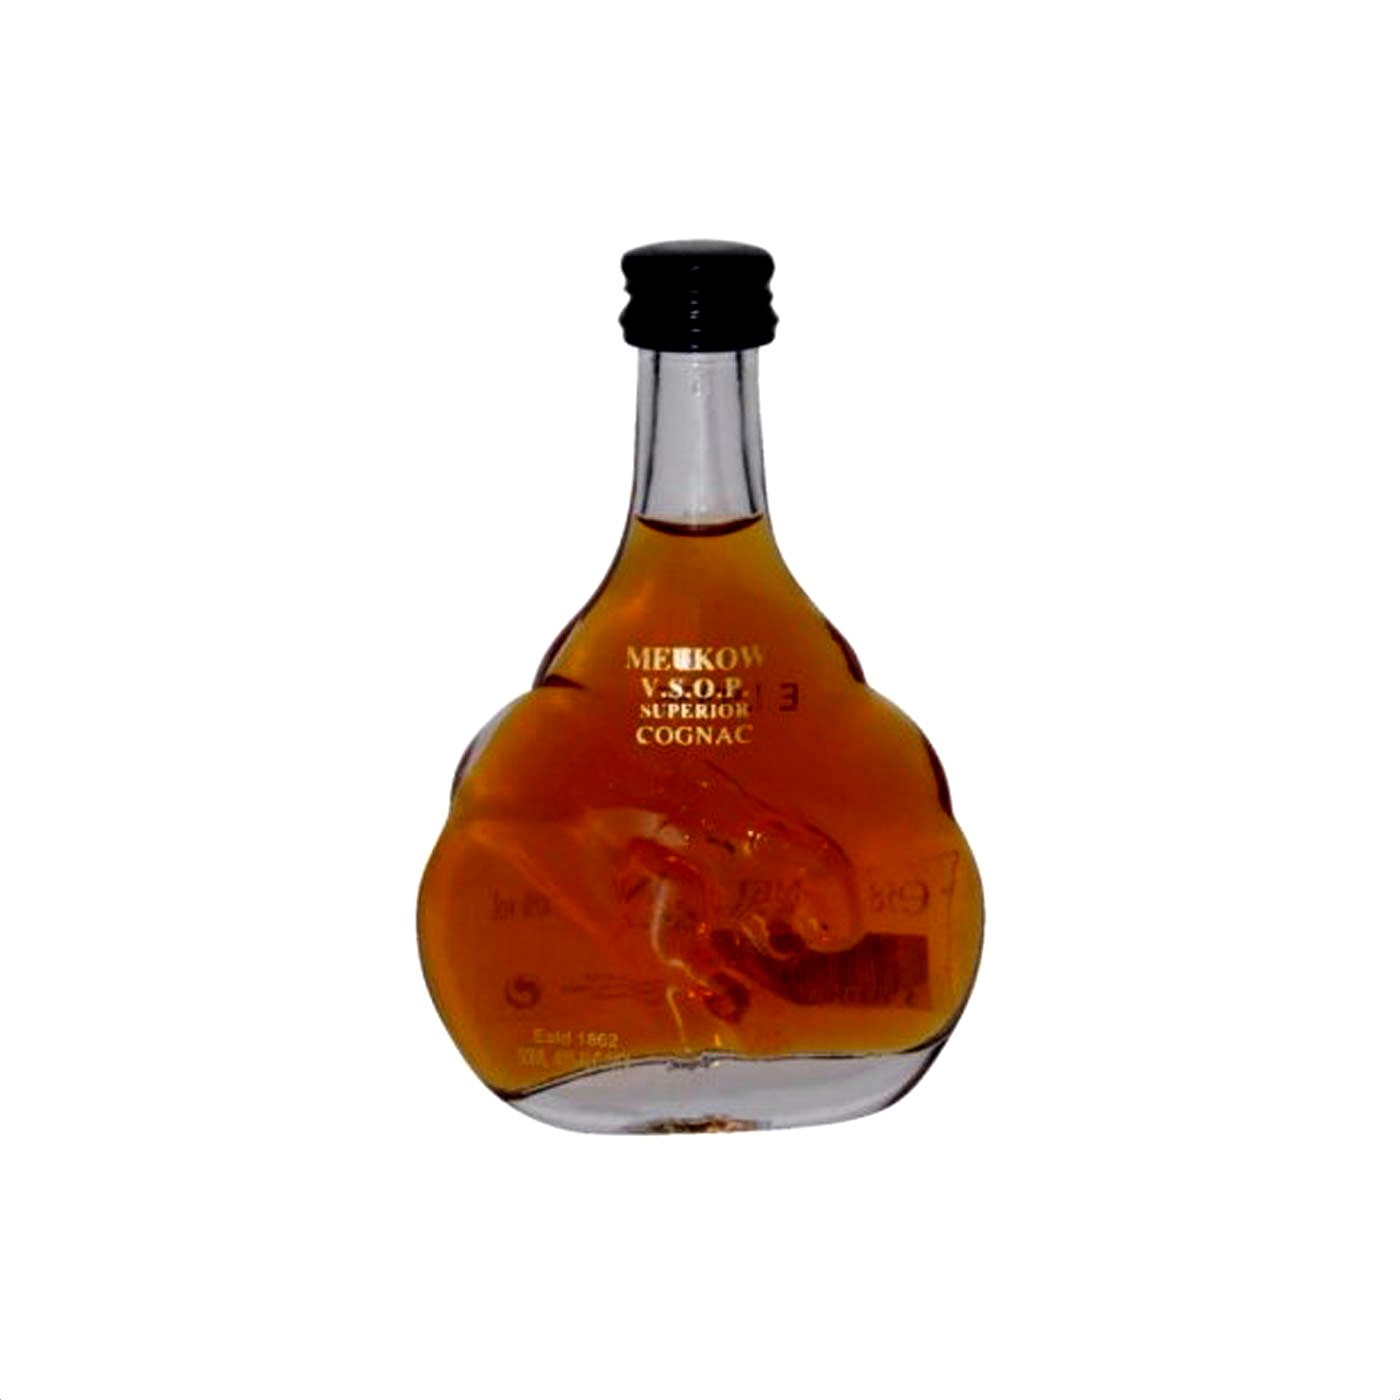 Meukow VSOP Cognac Mini 0.05l